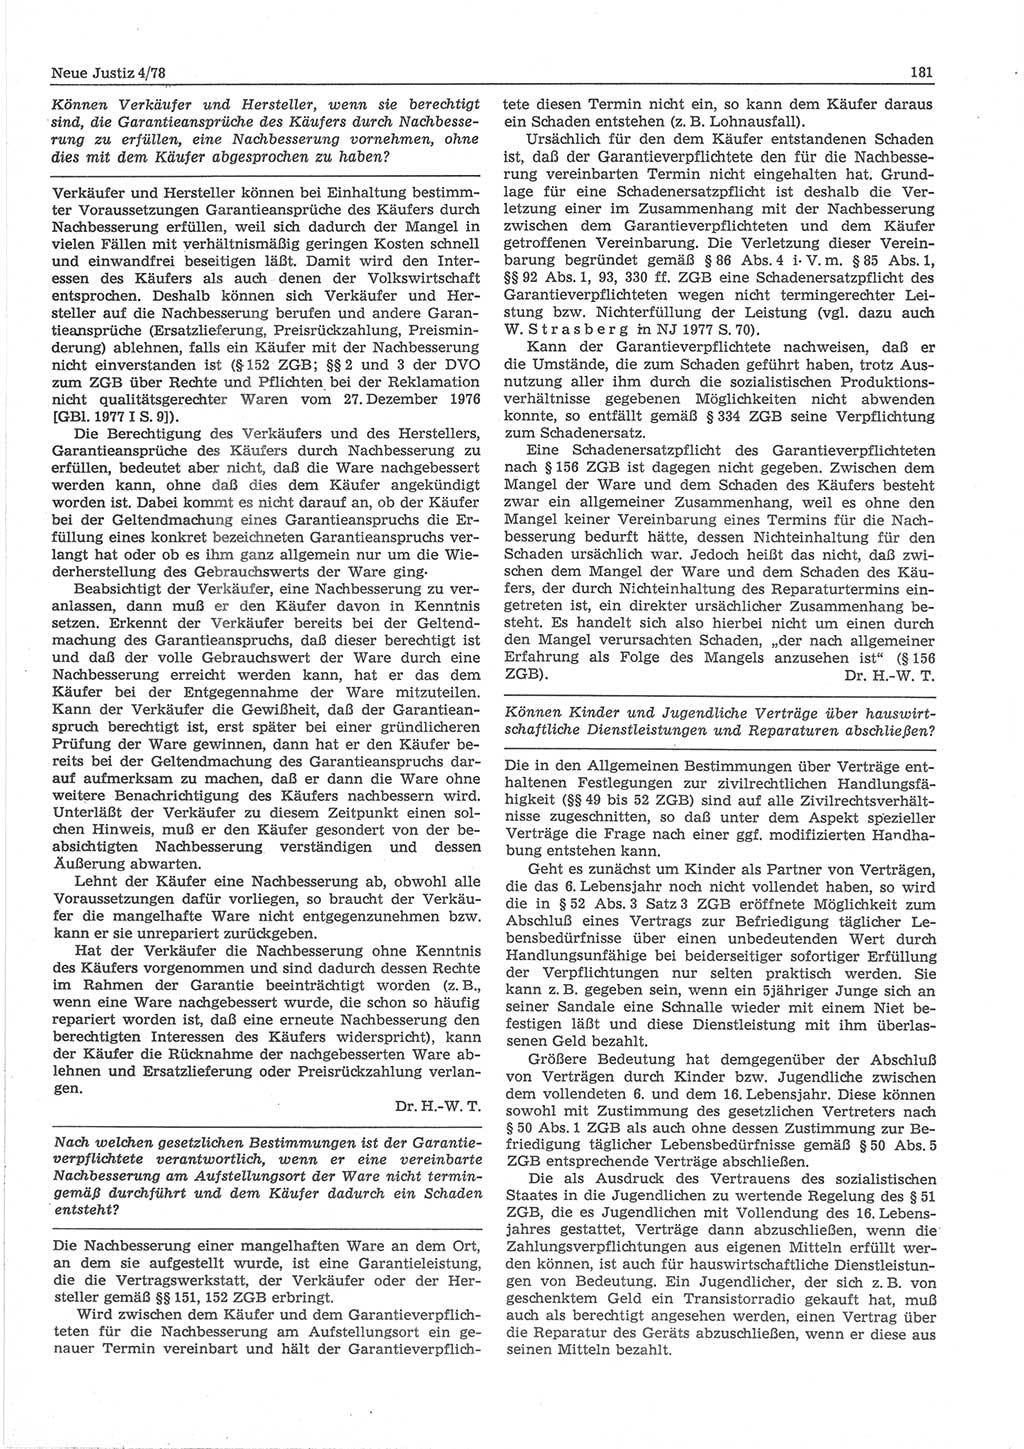 Neue Justiz (NJ), Zeitschrift für sozialistisches Recht und Gesetzlichkeit [Deutsche Demokratische Republik (DDR)], 32. Jahrgang 1978, Seite 181 (NJ DDR 1978, S. 181)